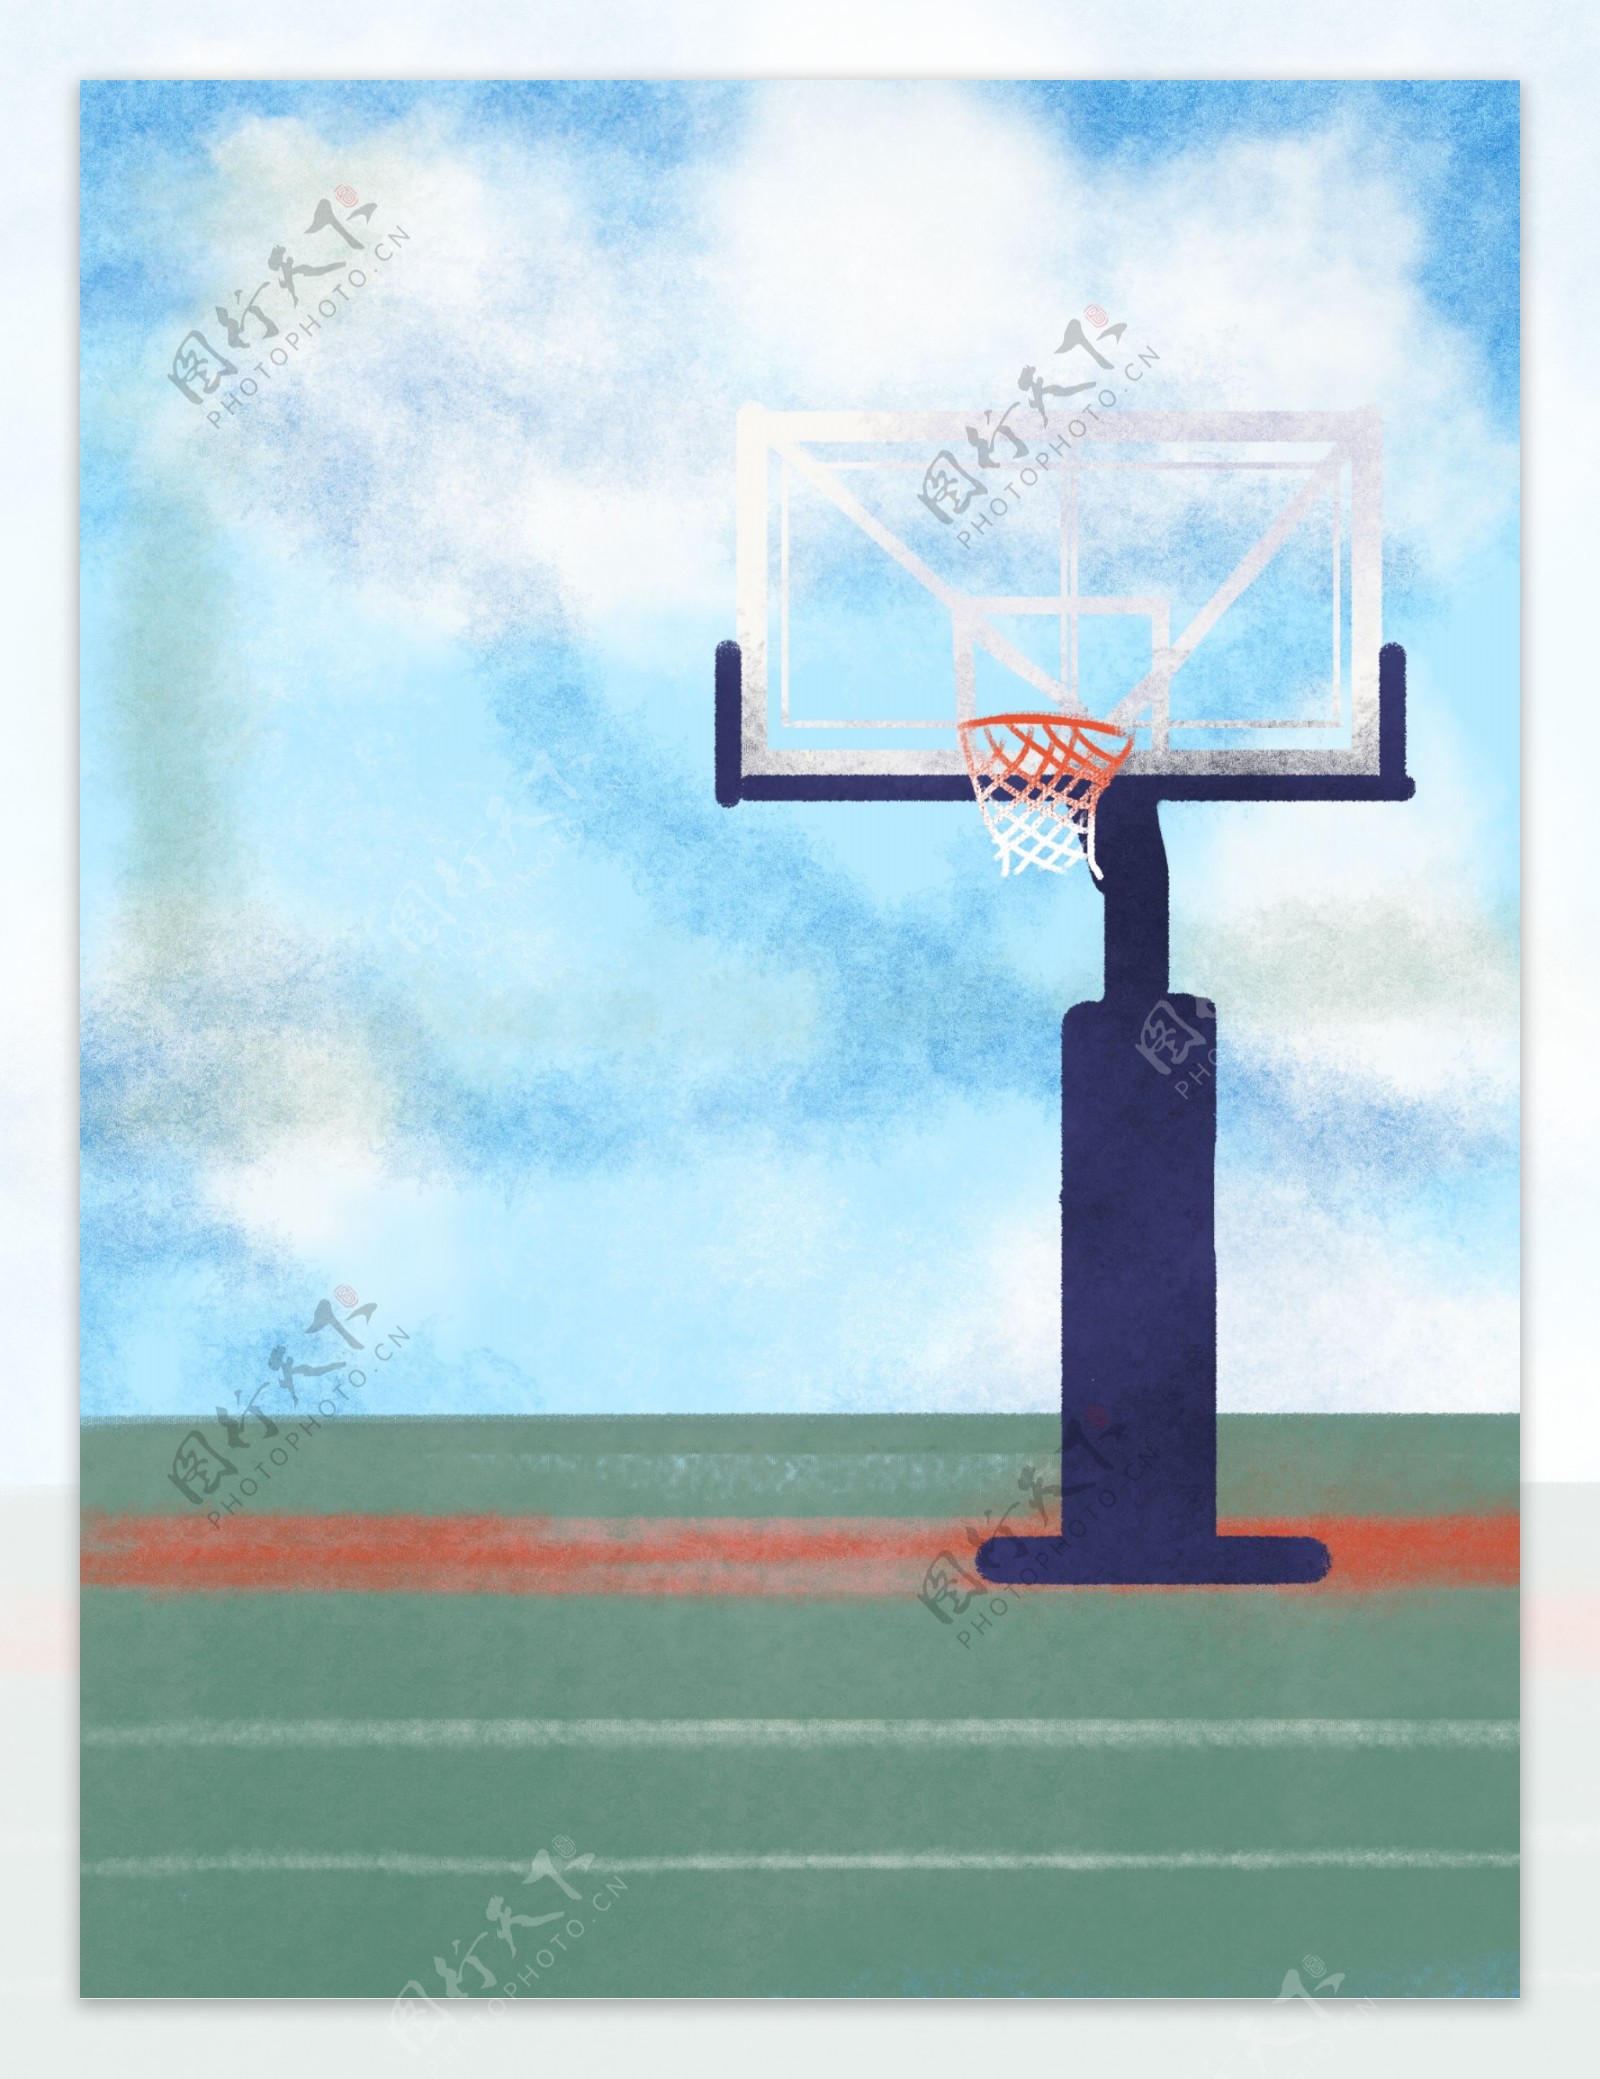 手绘篮球场背景设计